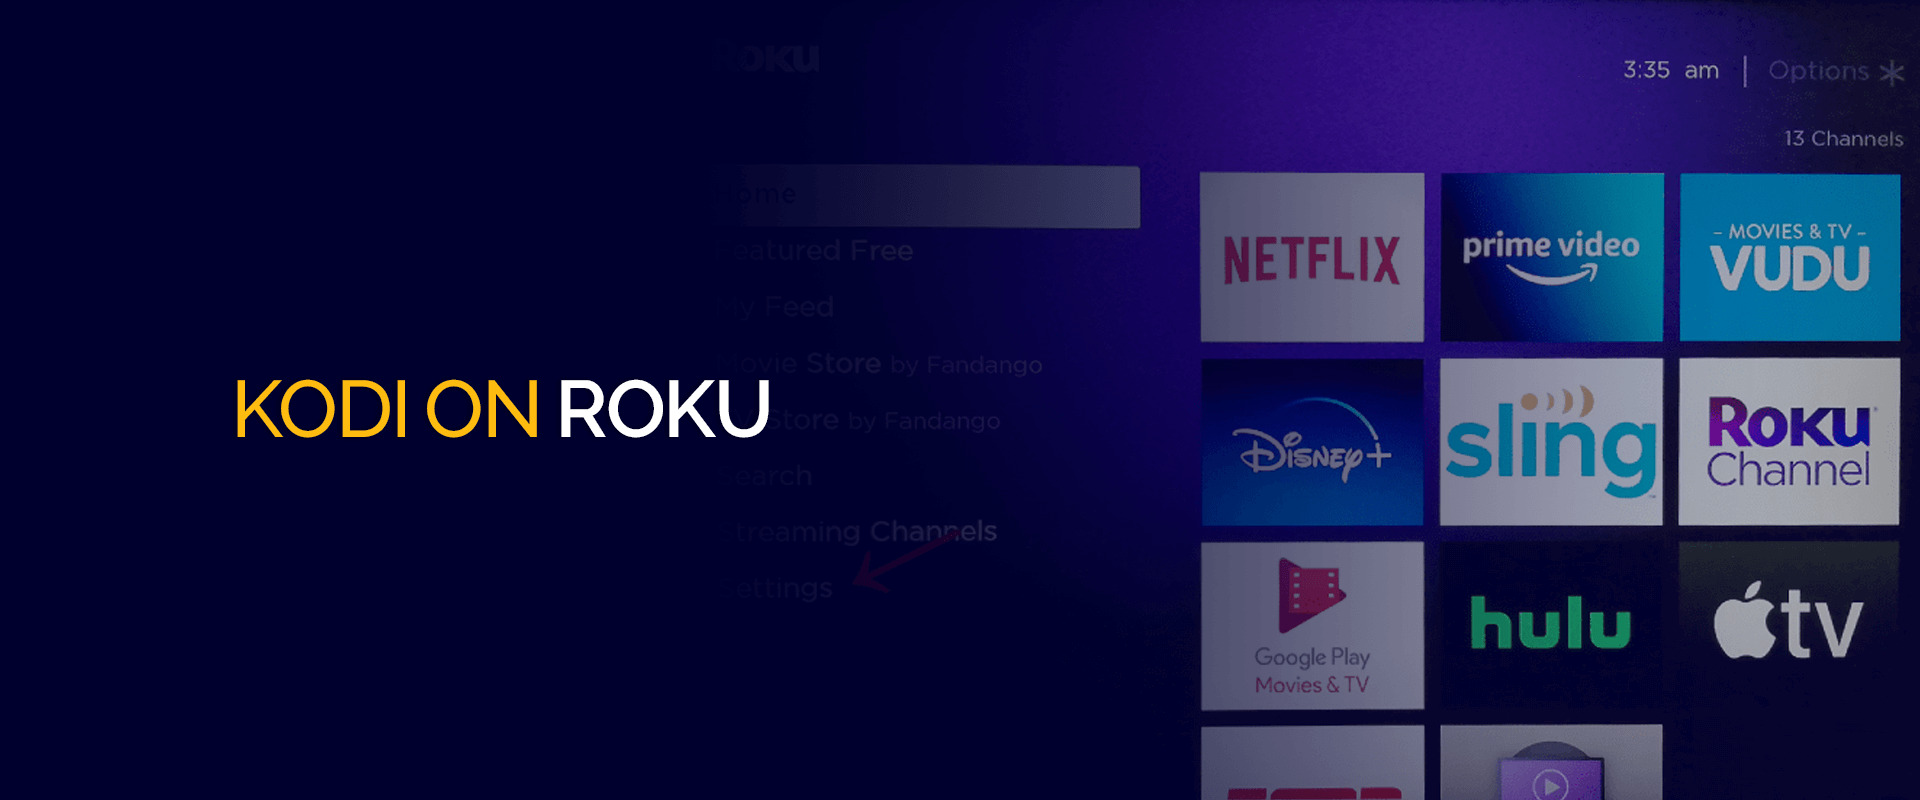 How To Download Kodi On Roku